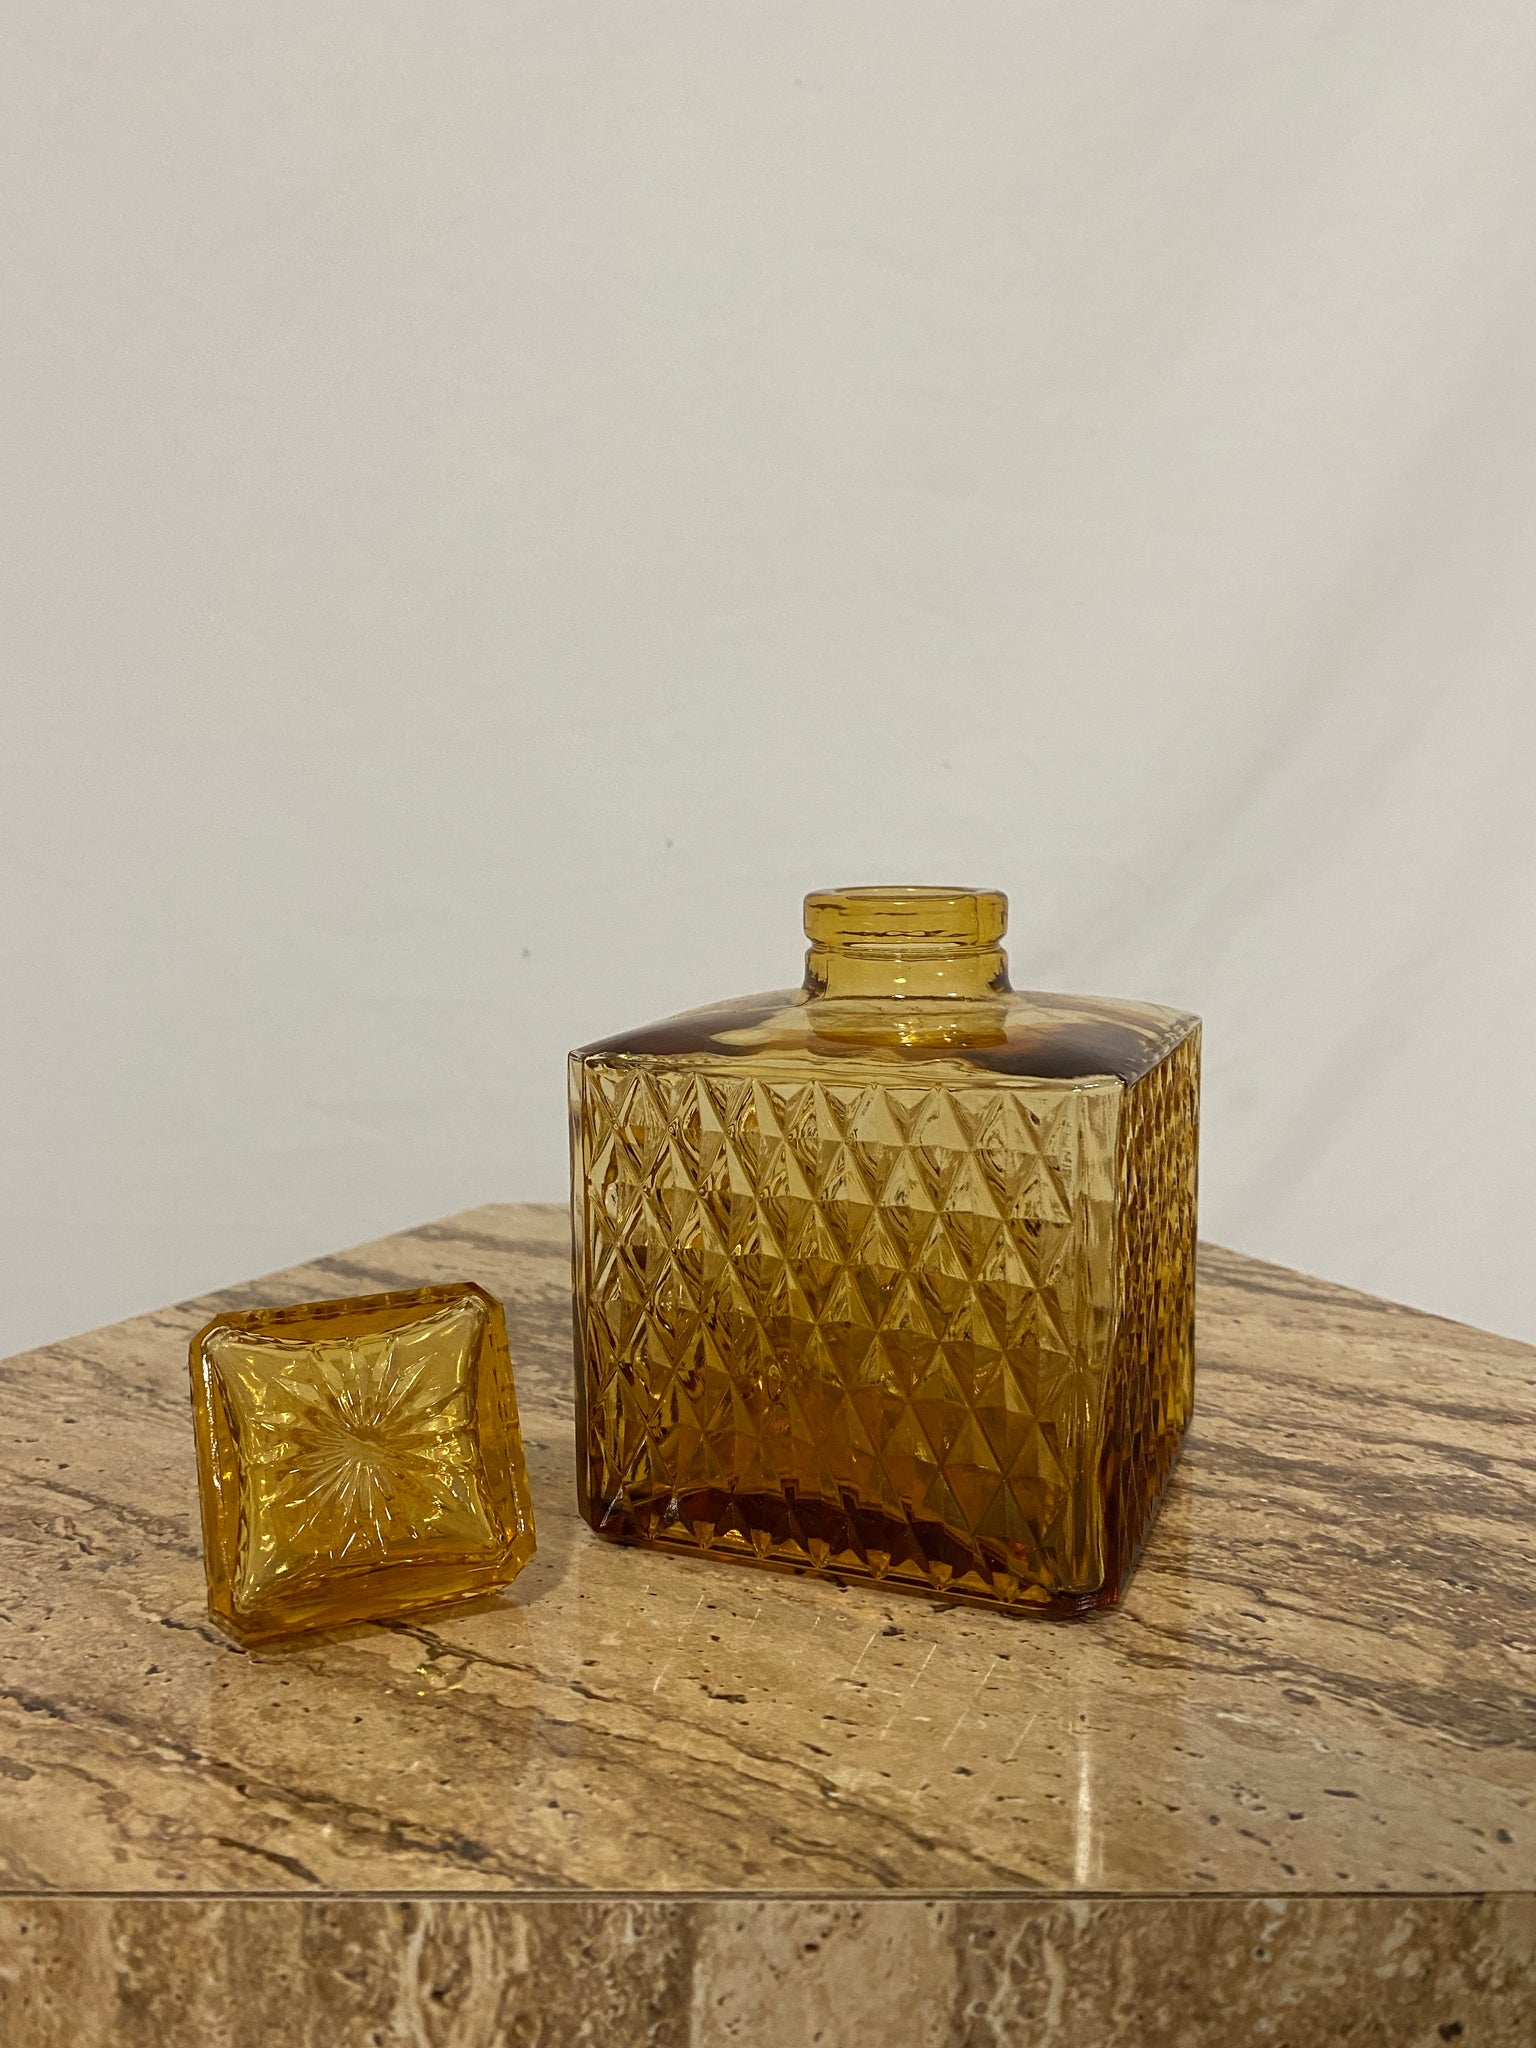 Amber glass liquor bottle